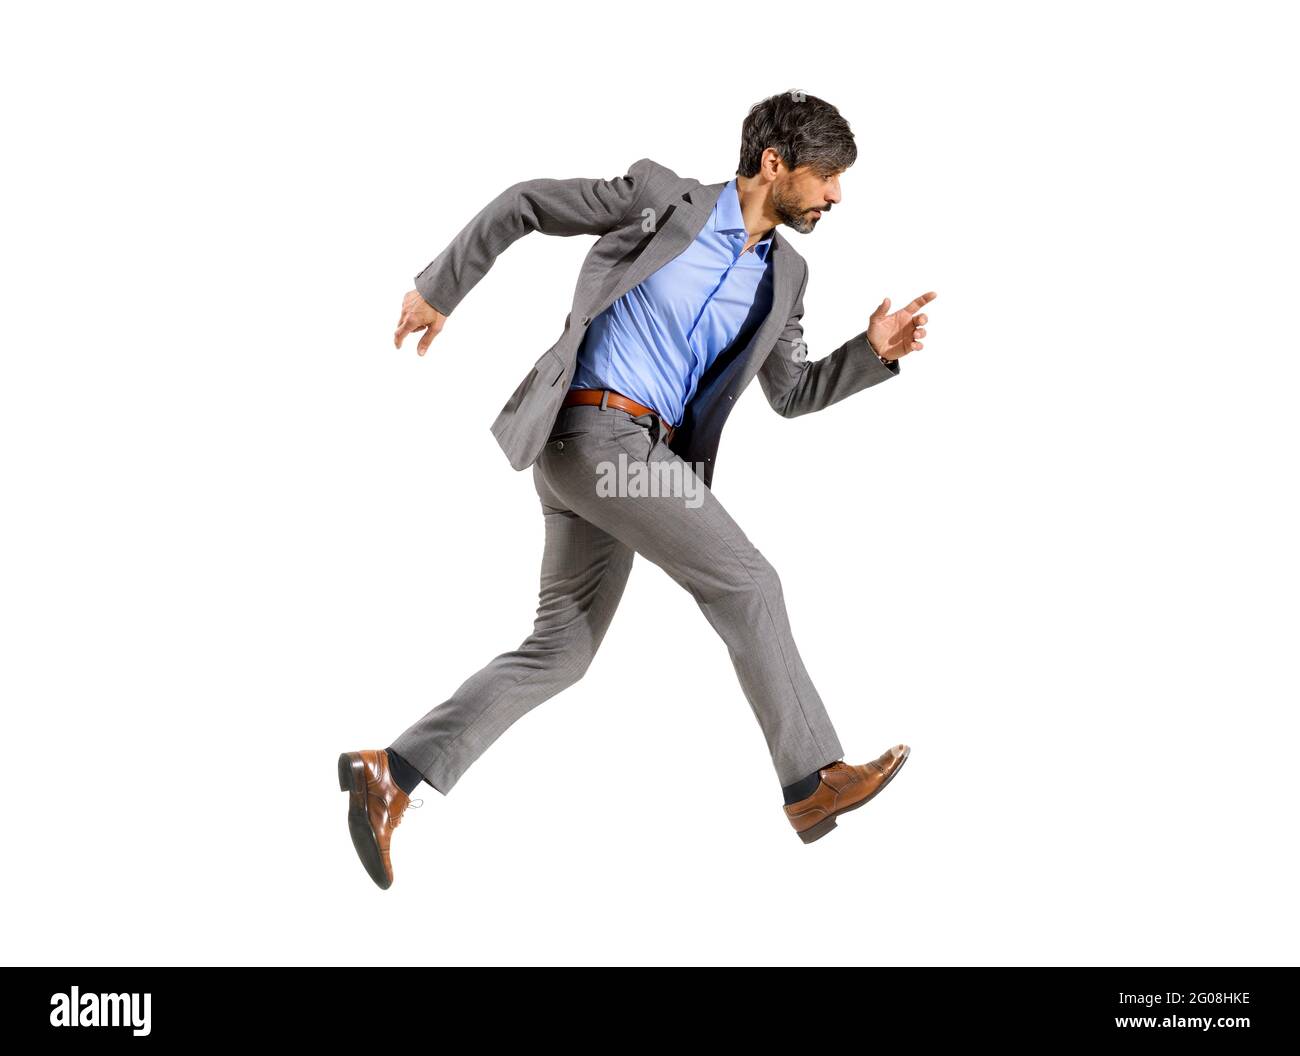 Ein Geschäftsmann in einem eleganten Anzug, der sehr schnell in Eile läuft und einen zielstrebig fokussierten Ausdruck auf einem weißen Hintergrund ausdrückt Stockfoto